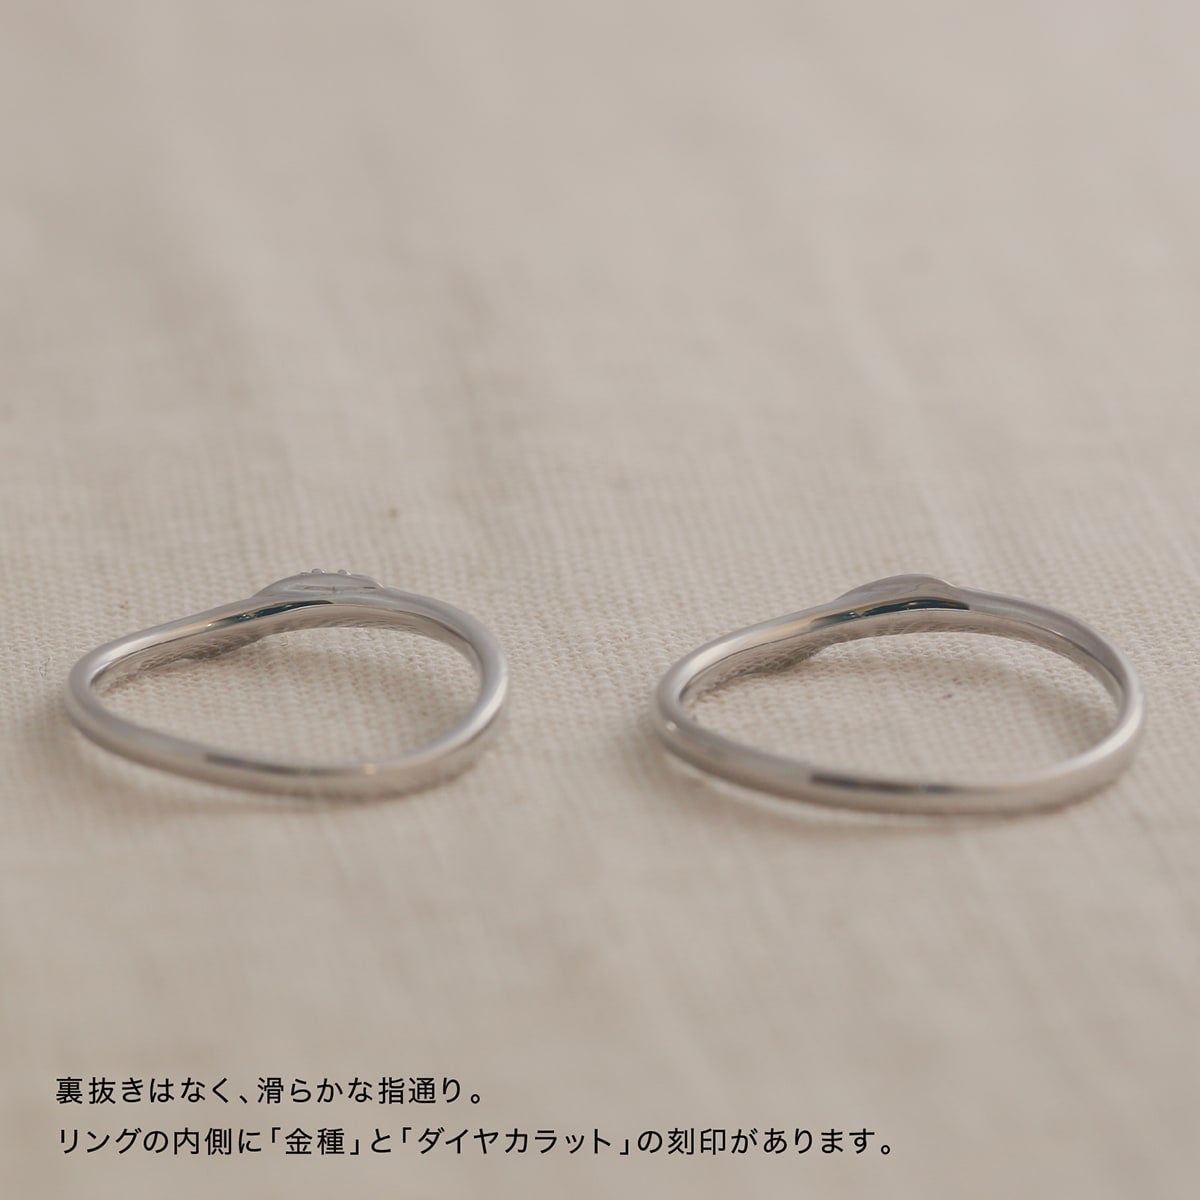 結婚指輪 ダイヤモンド 2本セット | 31876-31875